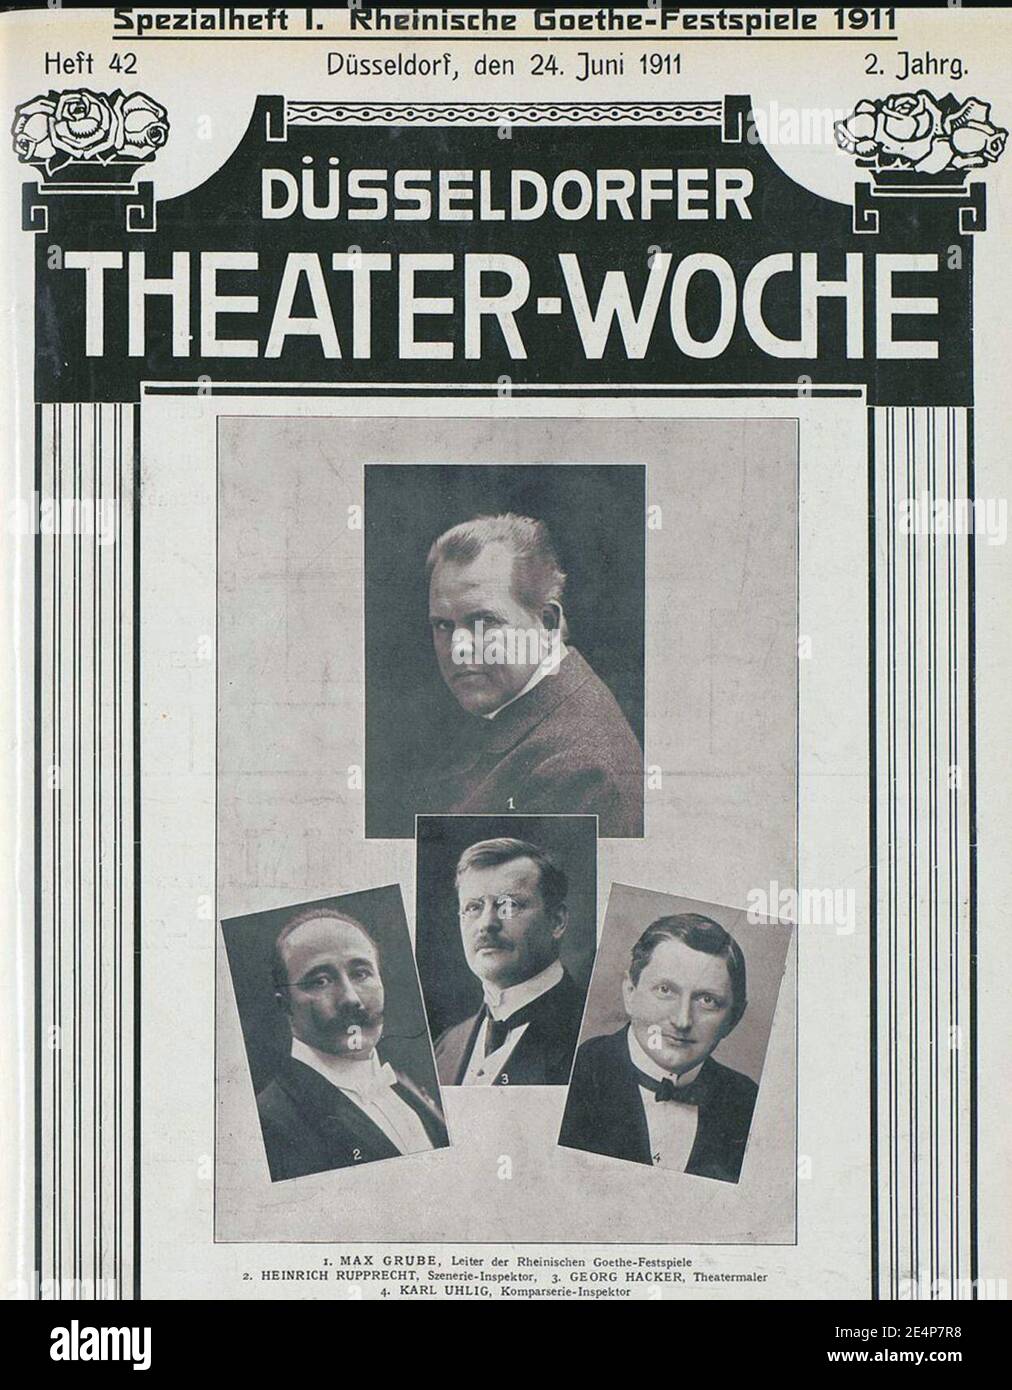 Max Grube (1), Heinrich Rupprecht (2), Georg Hacker (3), Karl Uhlig (4), Rheinische Goethe-Festspiele 1911, Titelblatt Düsseldorfer Theater-Woche, 24. Juni 1911, 2. Jahrg., Heft 42. Stock Photo